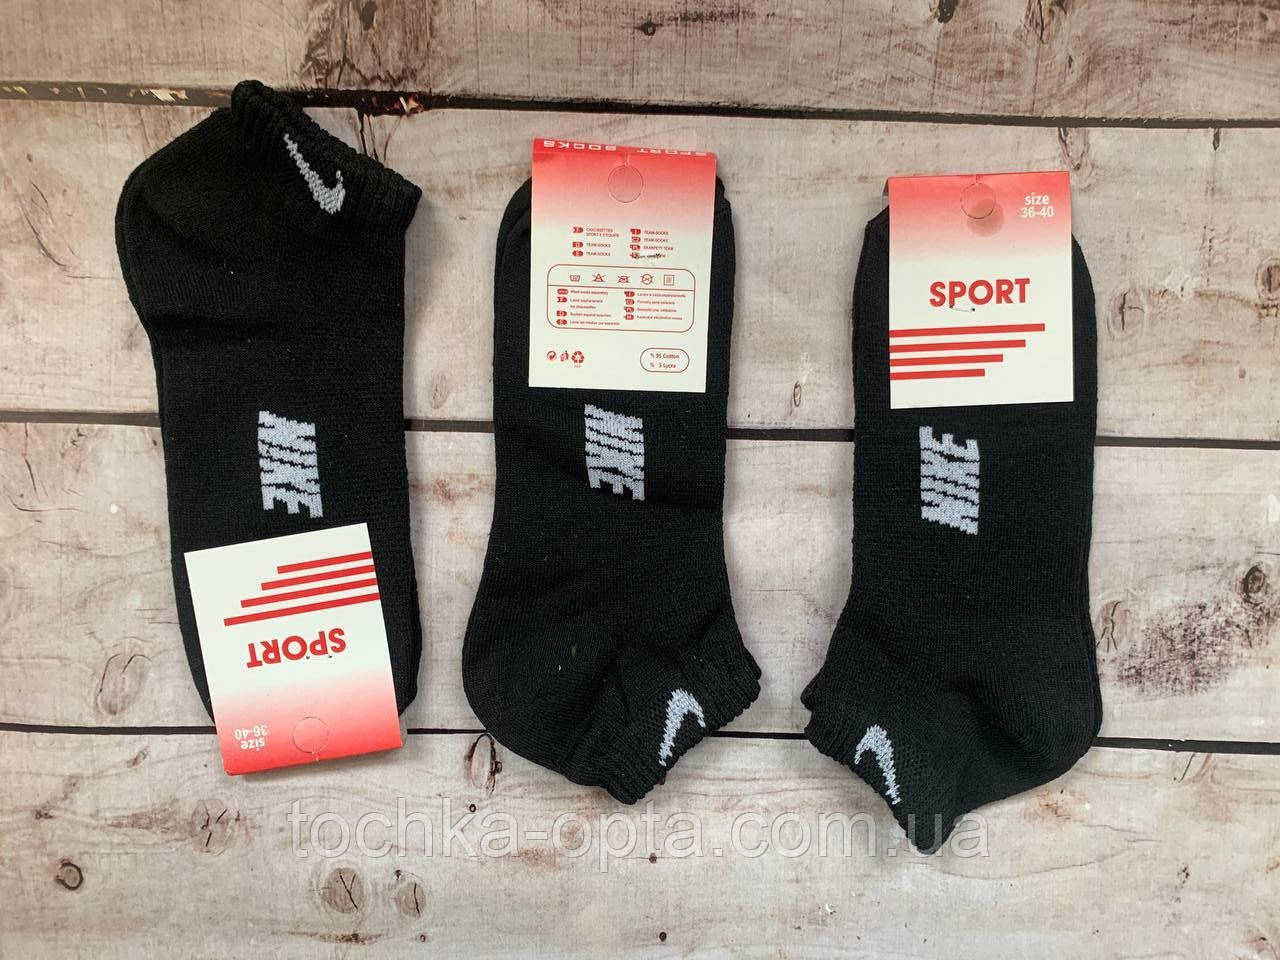 Шкарпетки Nike чорнi 36-40р. низький ciтка